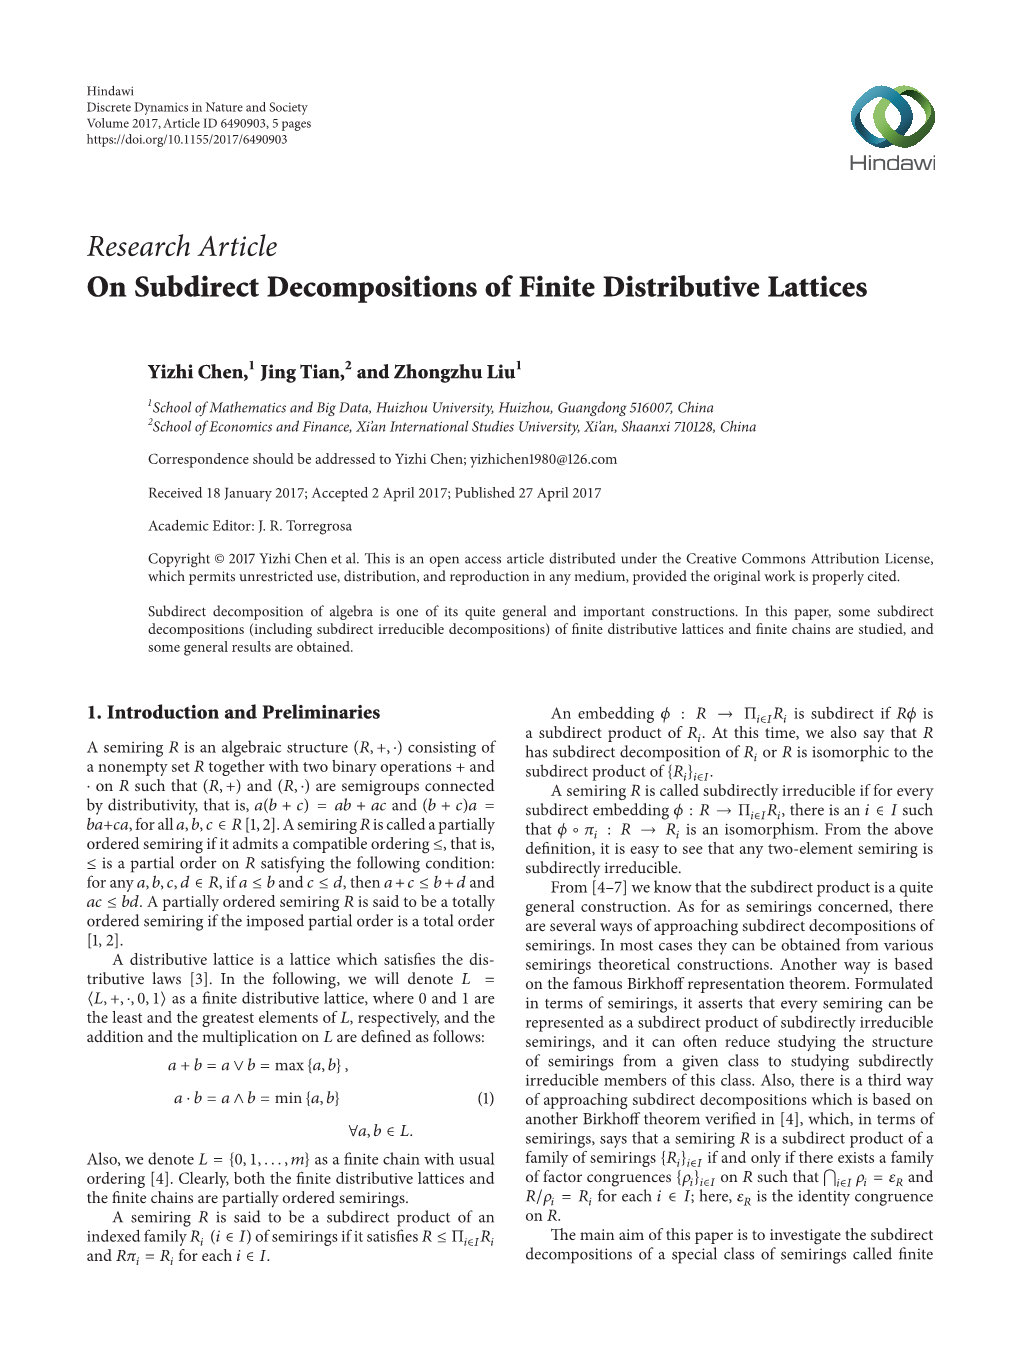 On Subdirect Decompositions of Finite Distributive Lattices